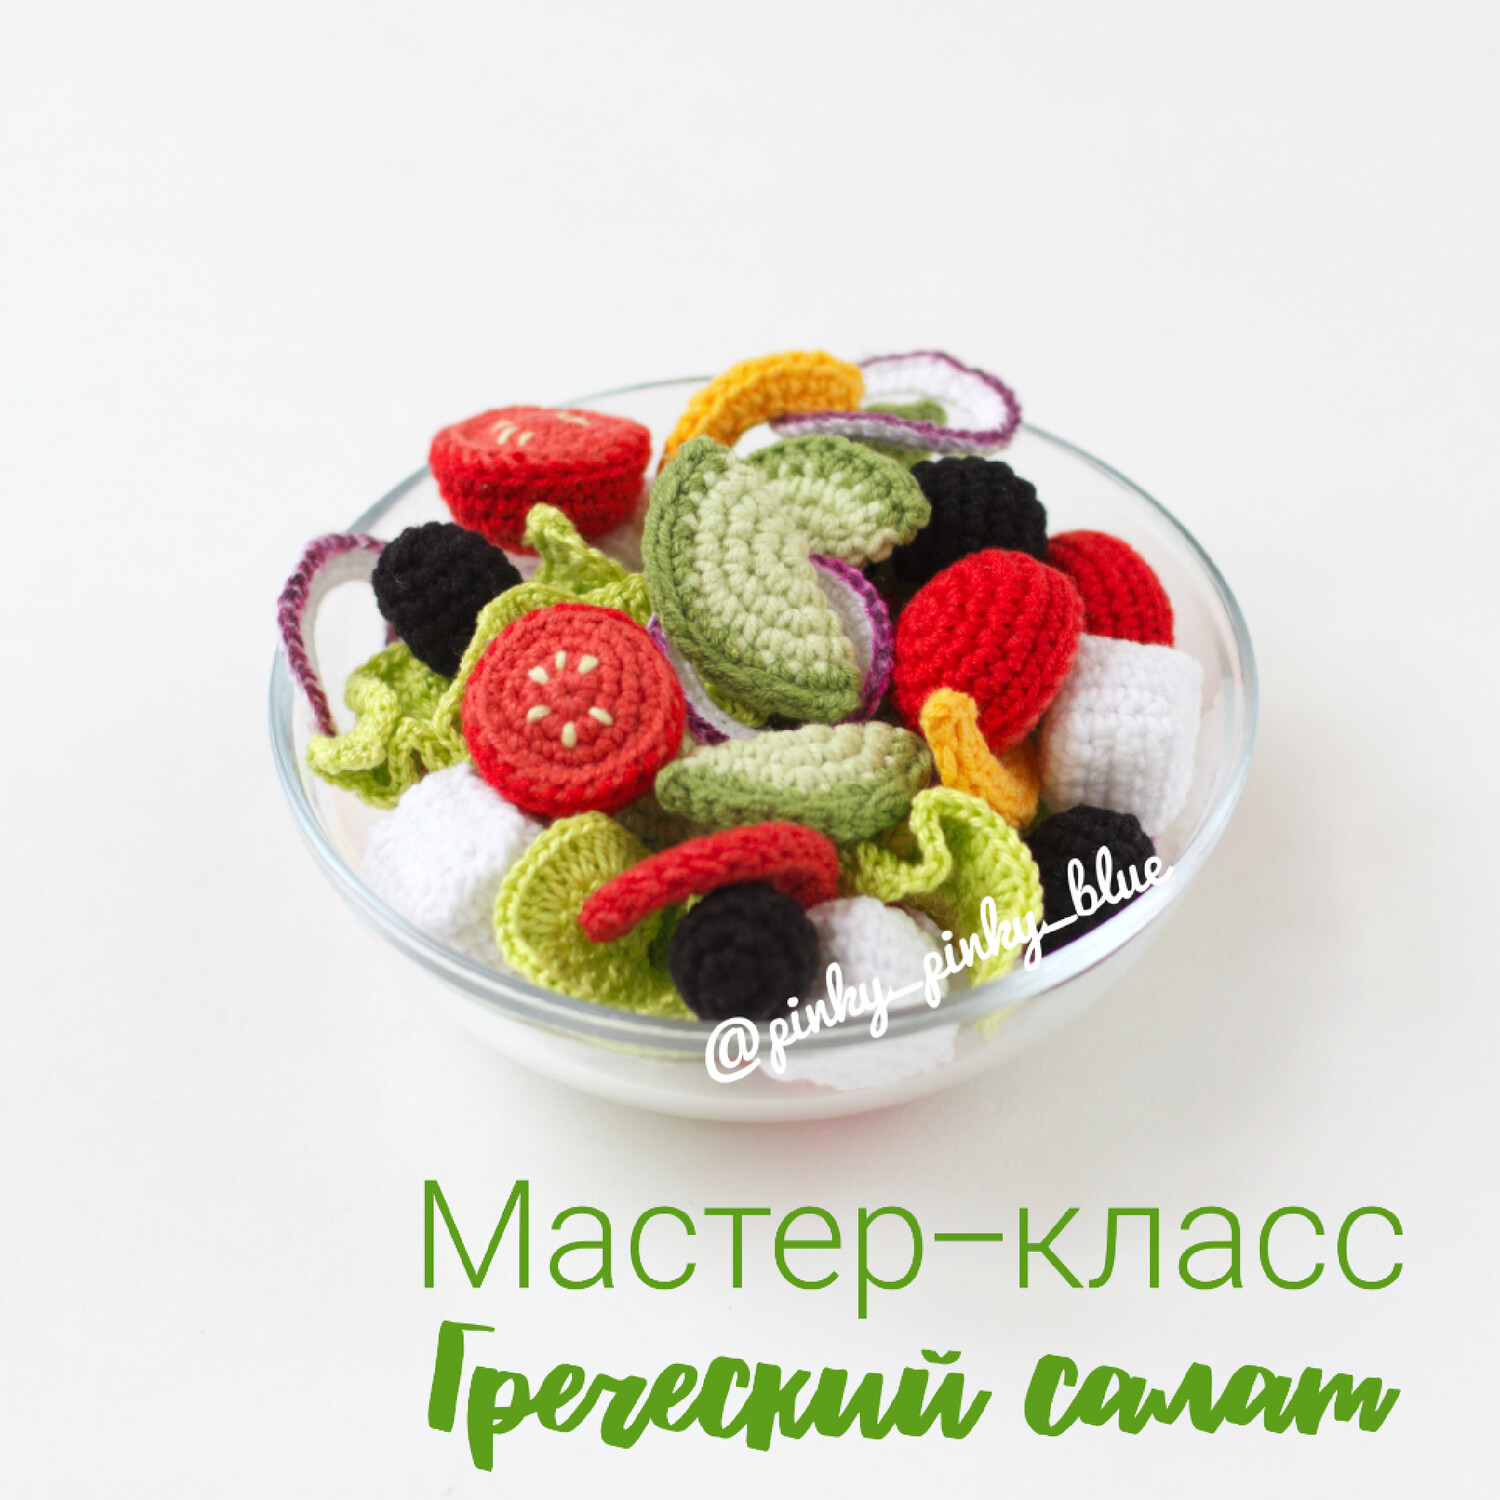 Греческий салат(безумно вкусный)